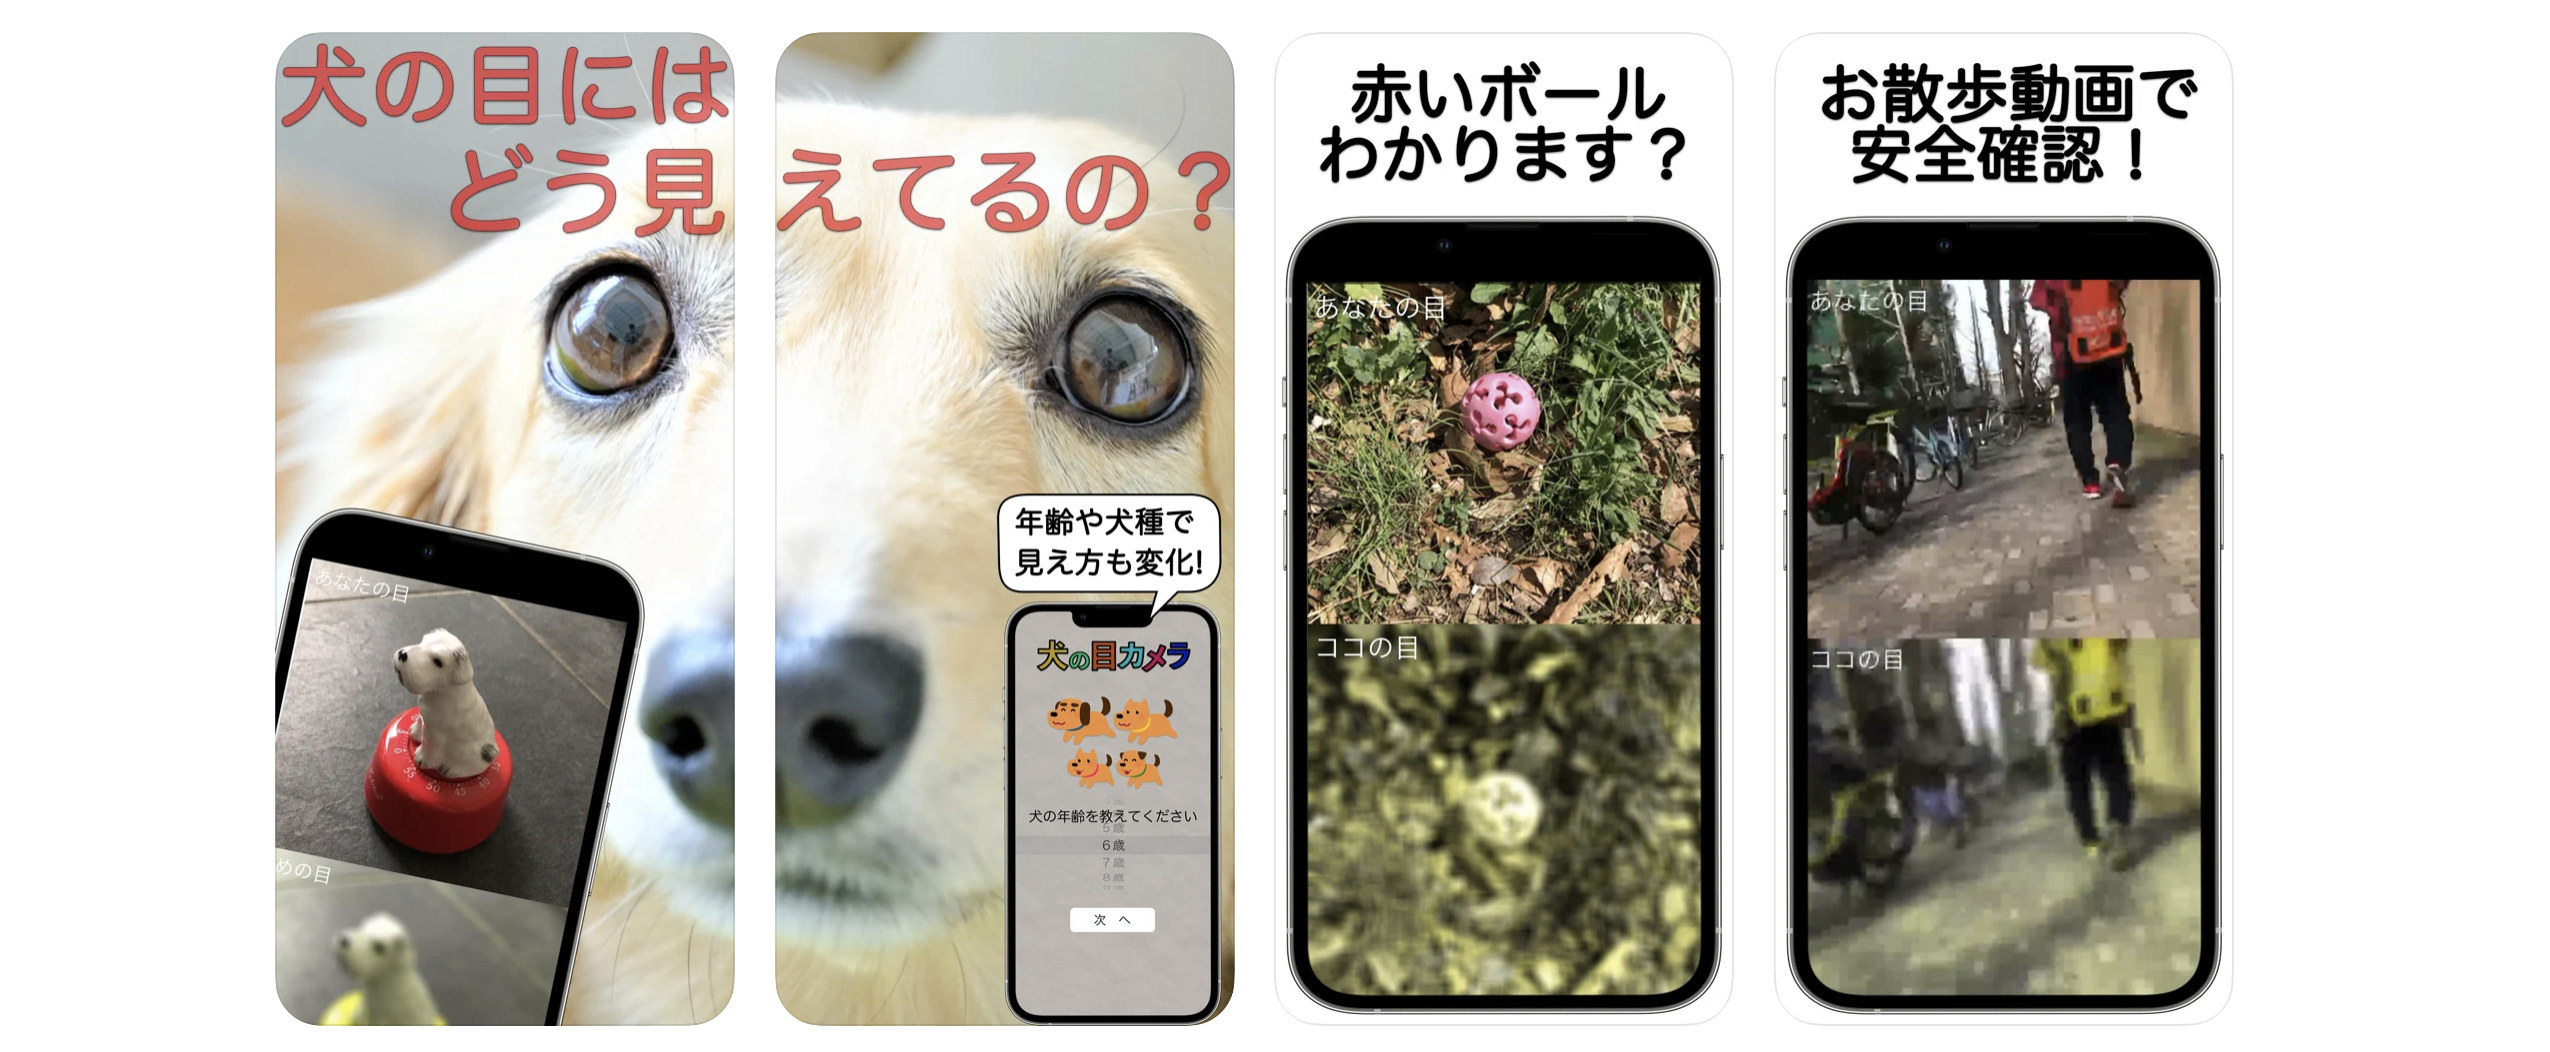 犬の視覚が疑似体験できるスマホアプリ 犬の目カメラ がリリース 知財図鑑